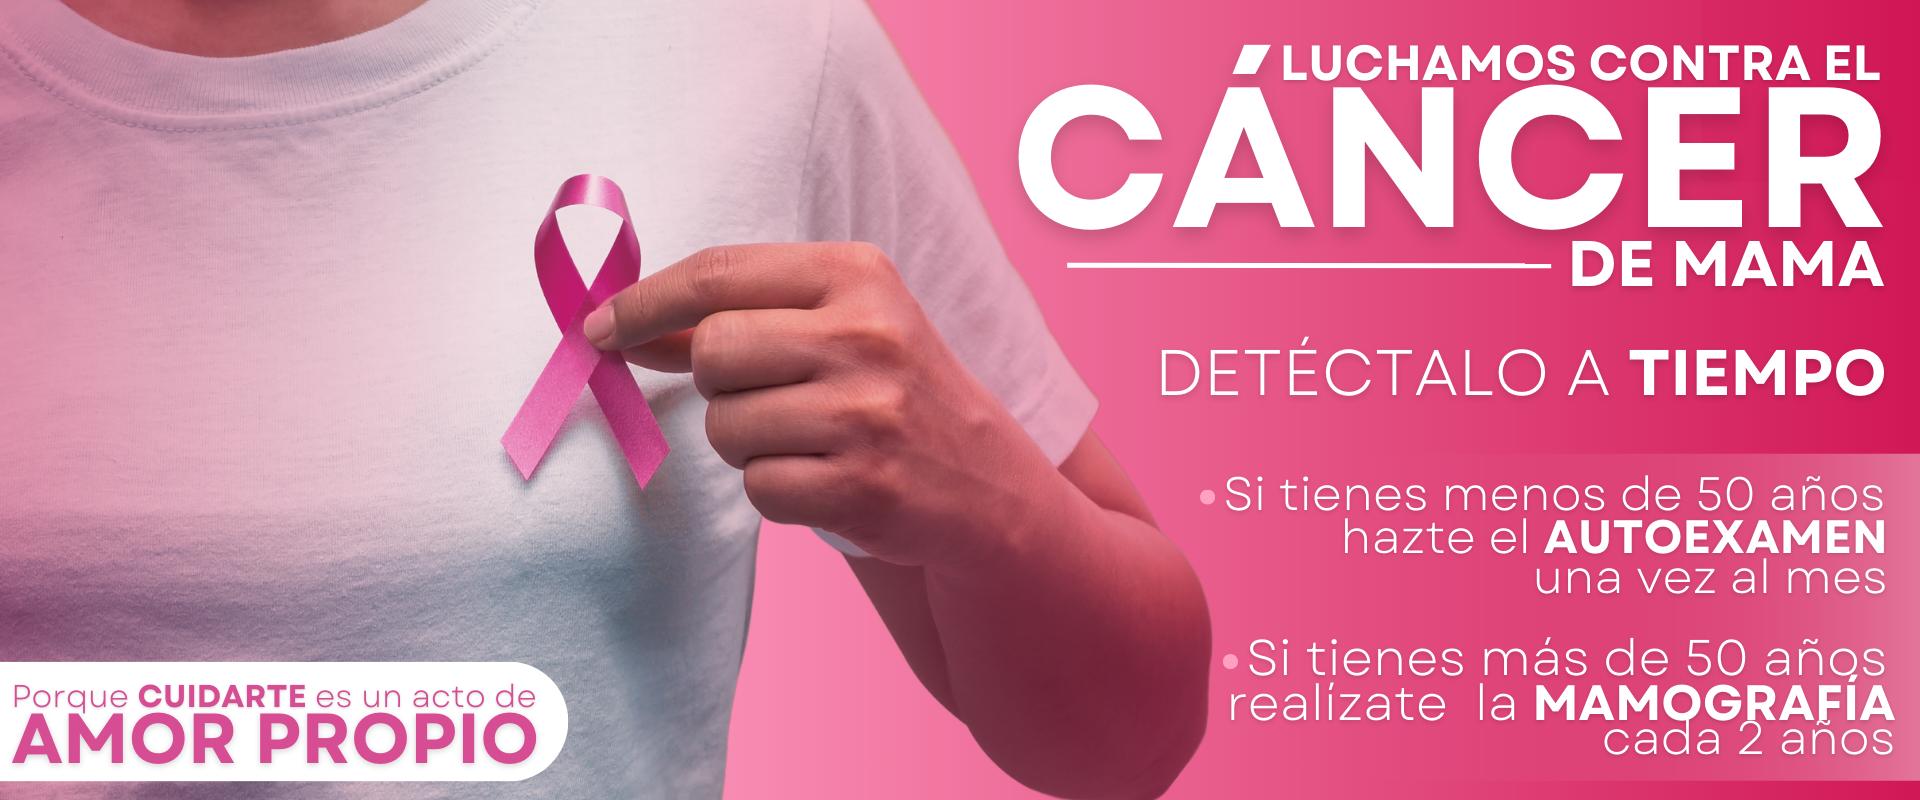 Campaña contra el cancer